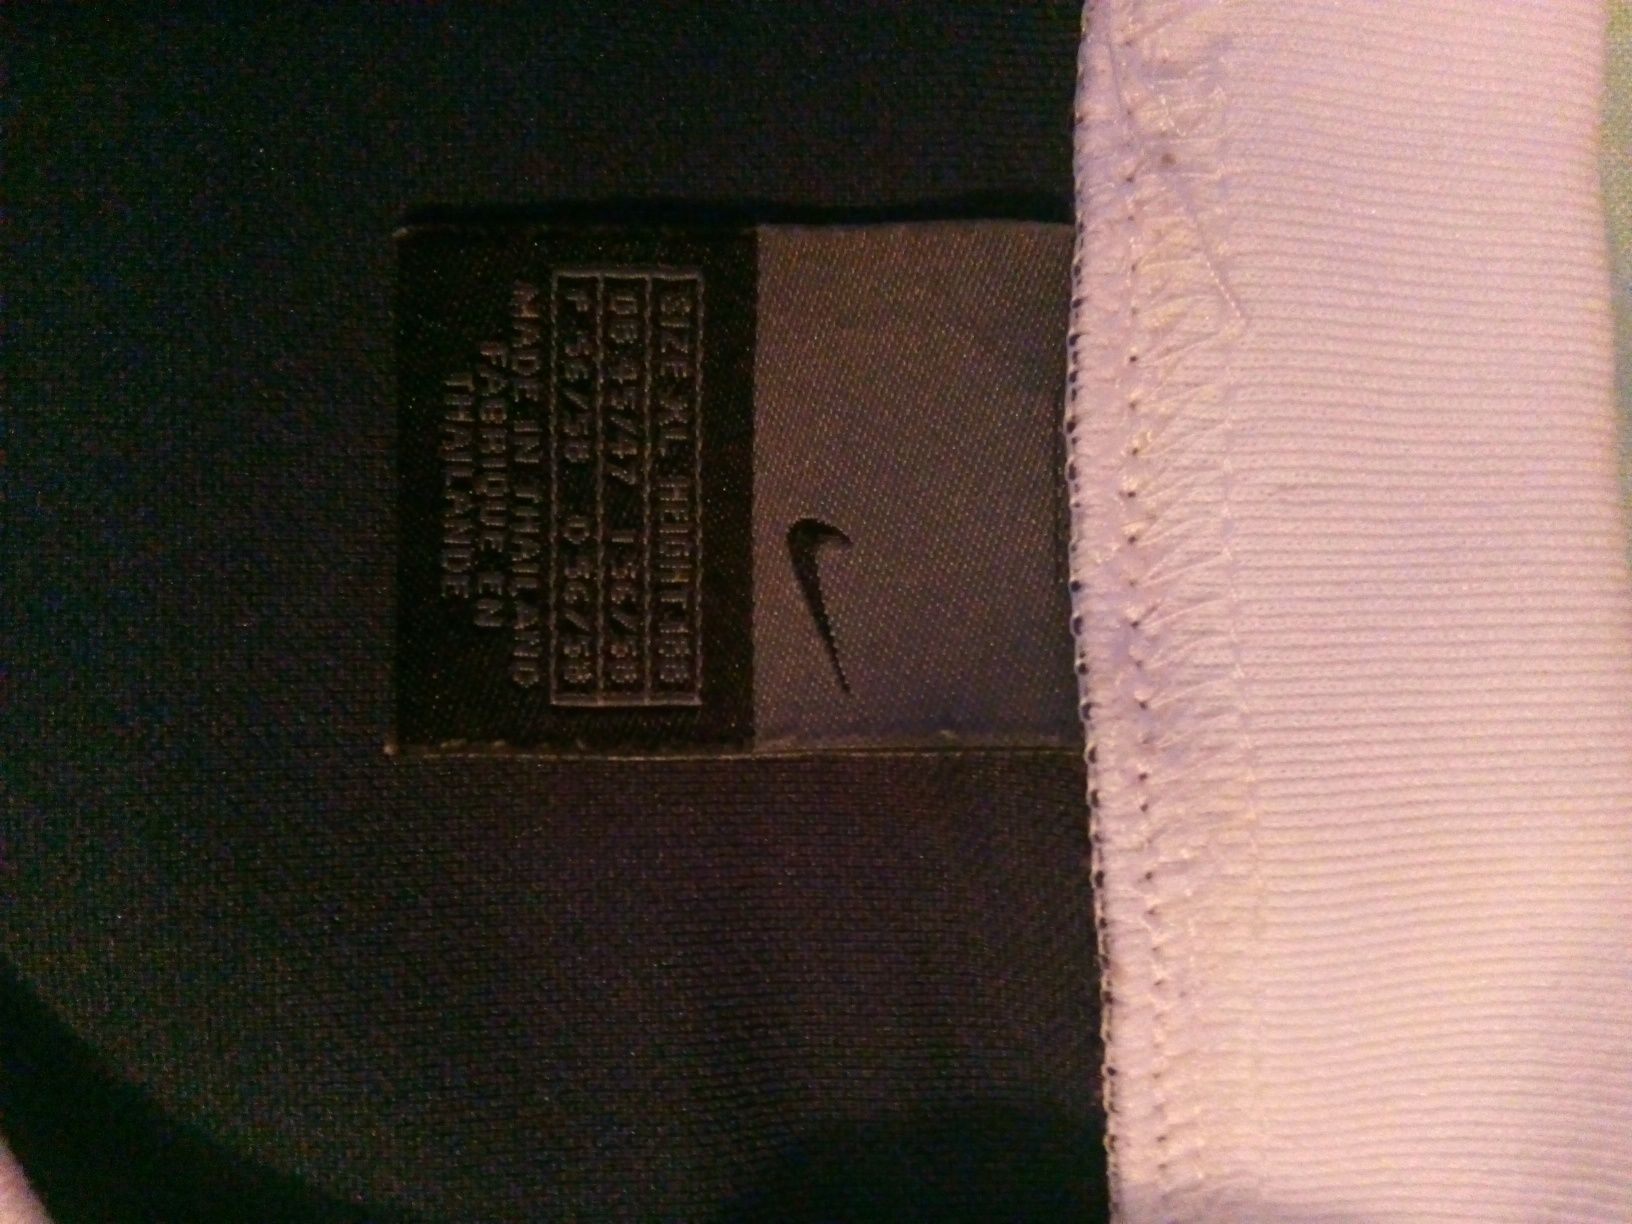 Bluza subțire Nike 100lei